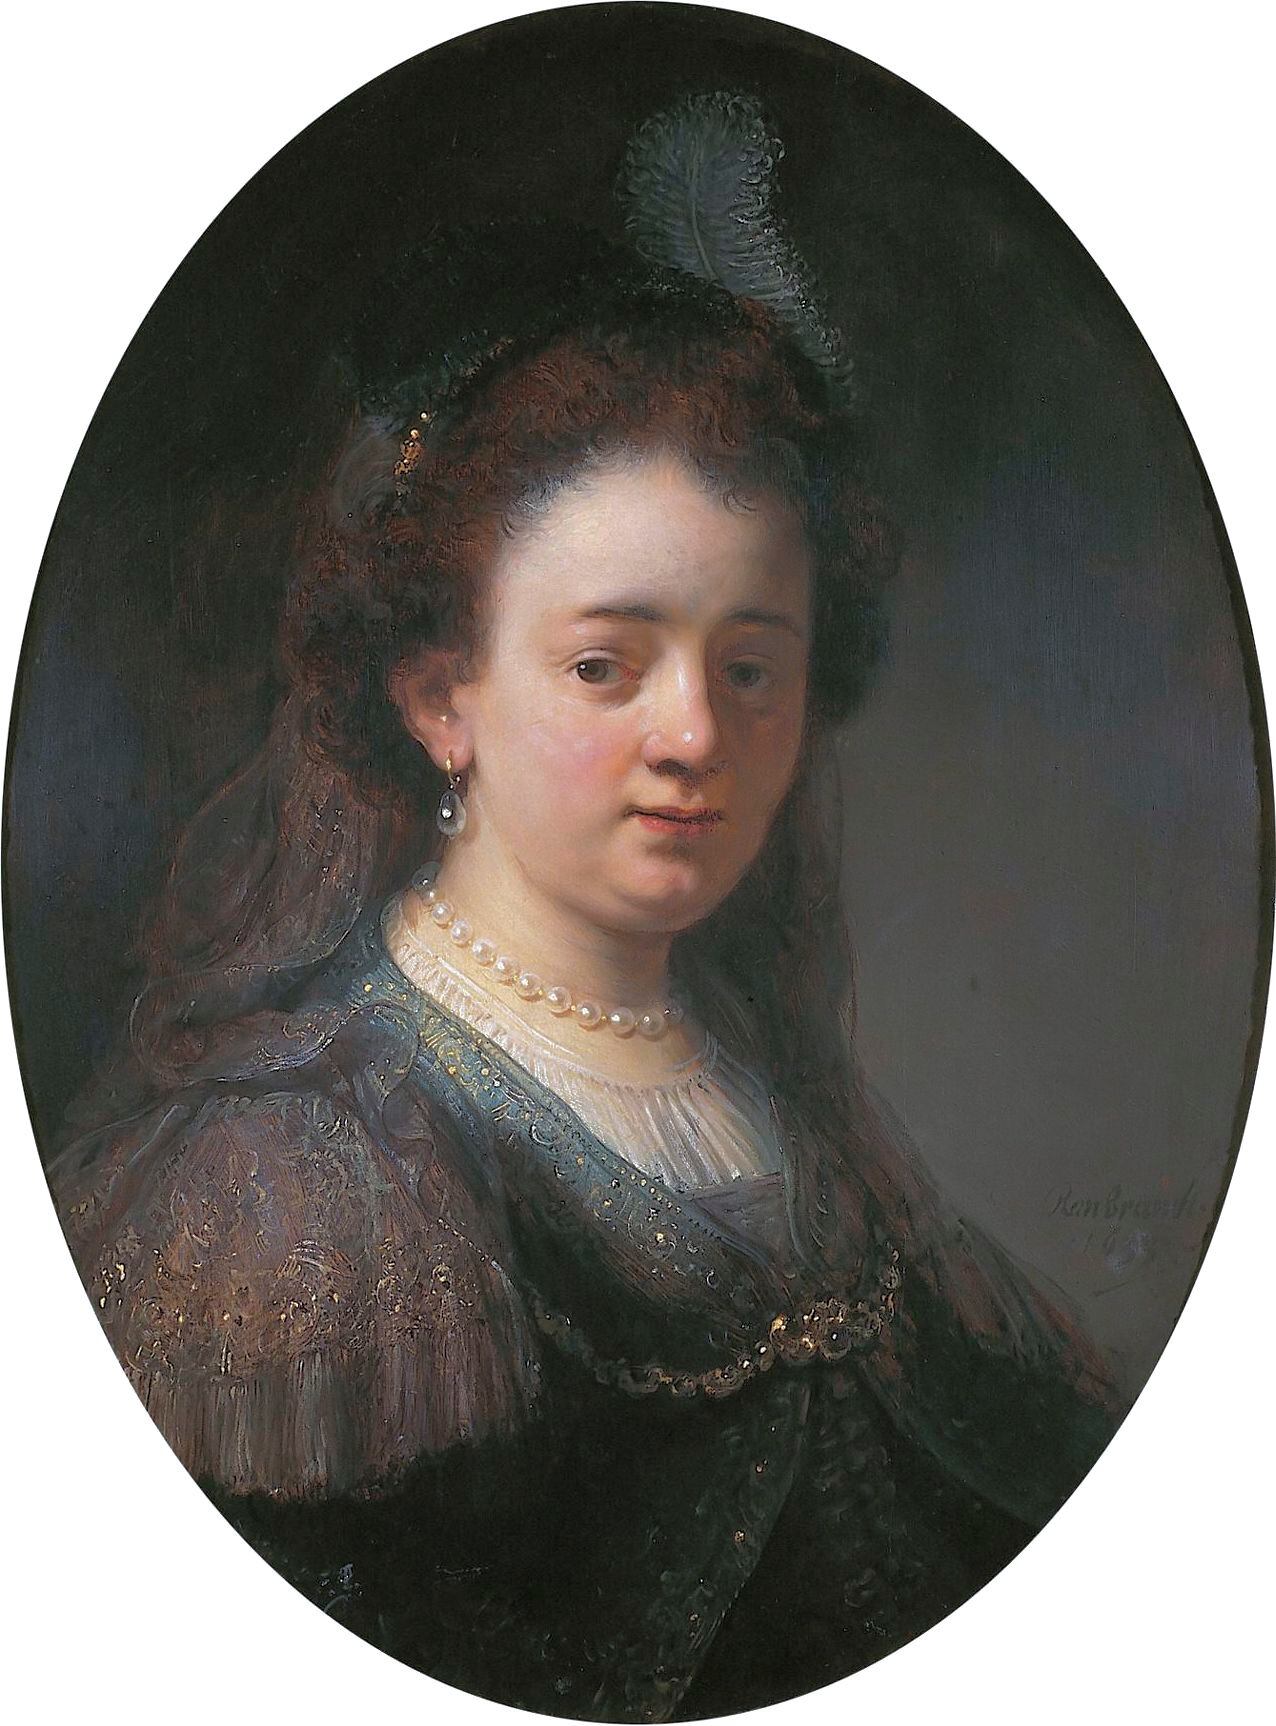 Saskia van Uylenburch (1612-1642), esposa de Rembrandt, en el atelier del pintor. Actualmente en posesión del Estado holandés.